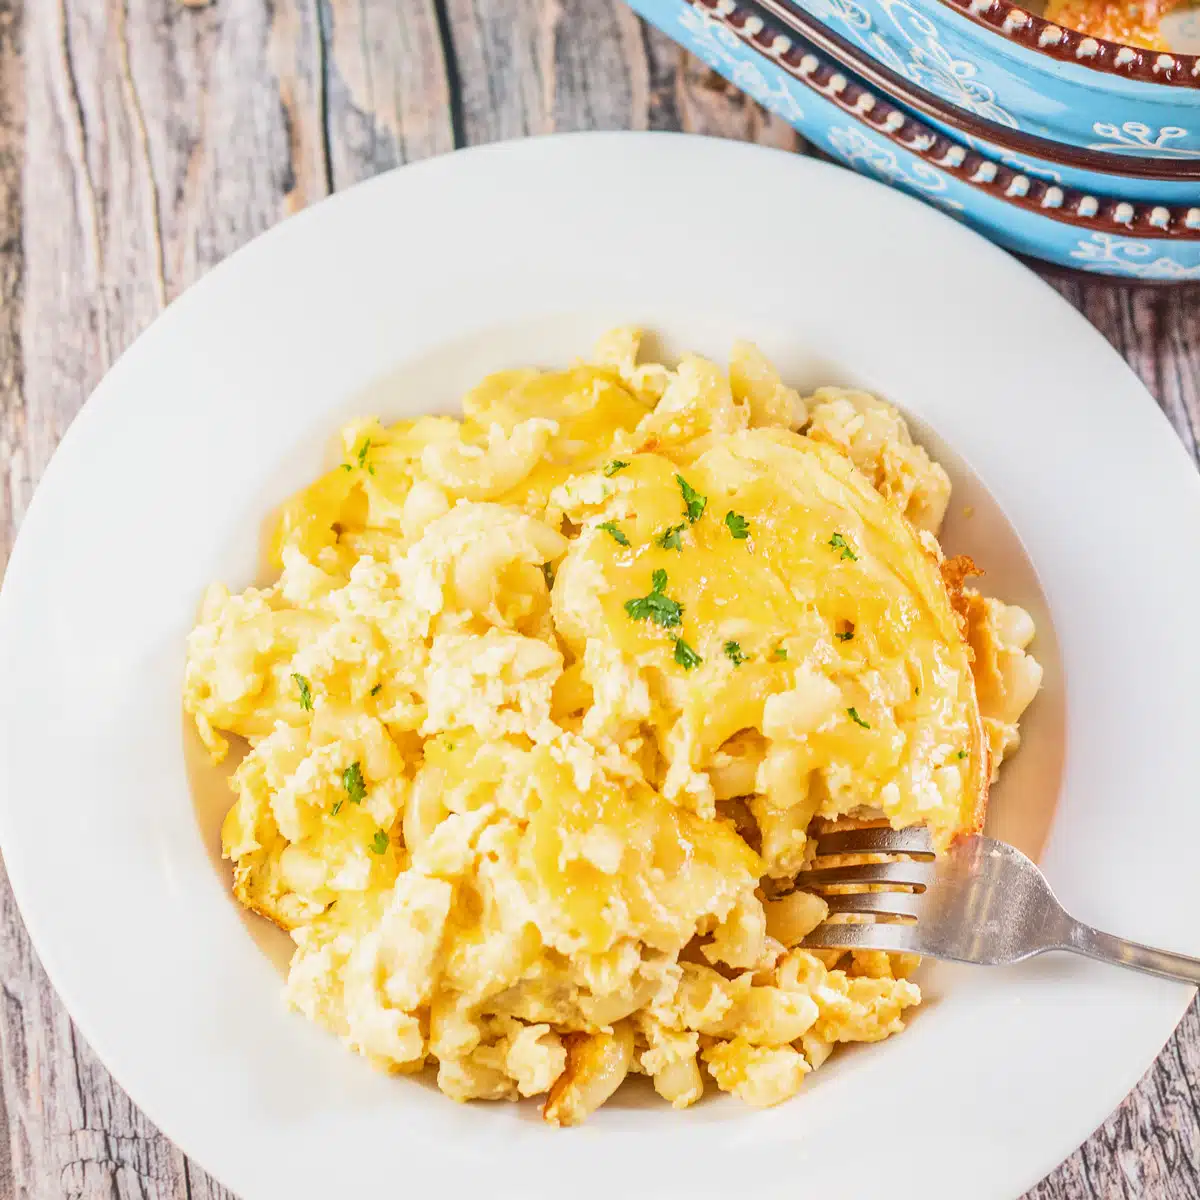 Meilleure recette de macaroni au fromage de Paula Deen avec beaucoup de fromage, d'œufs, de crème sure et cuite à la perfection.